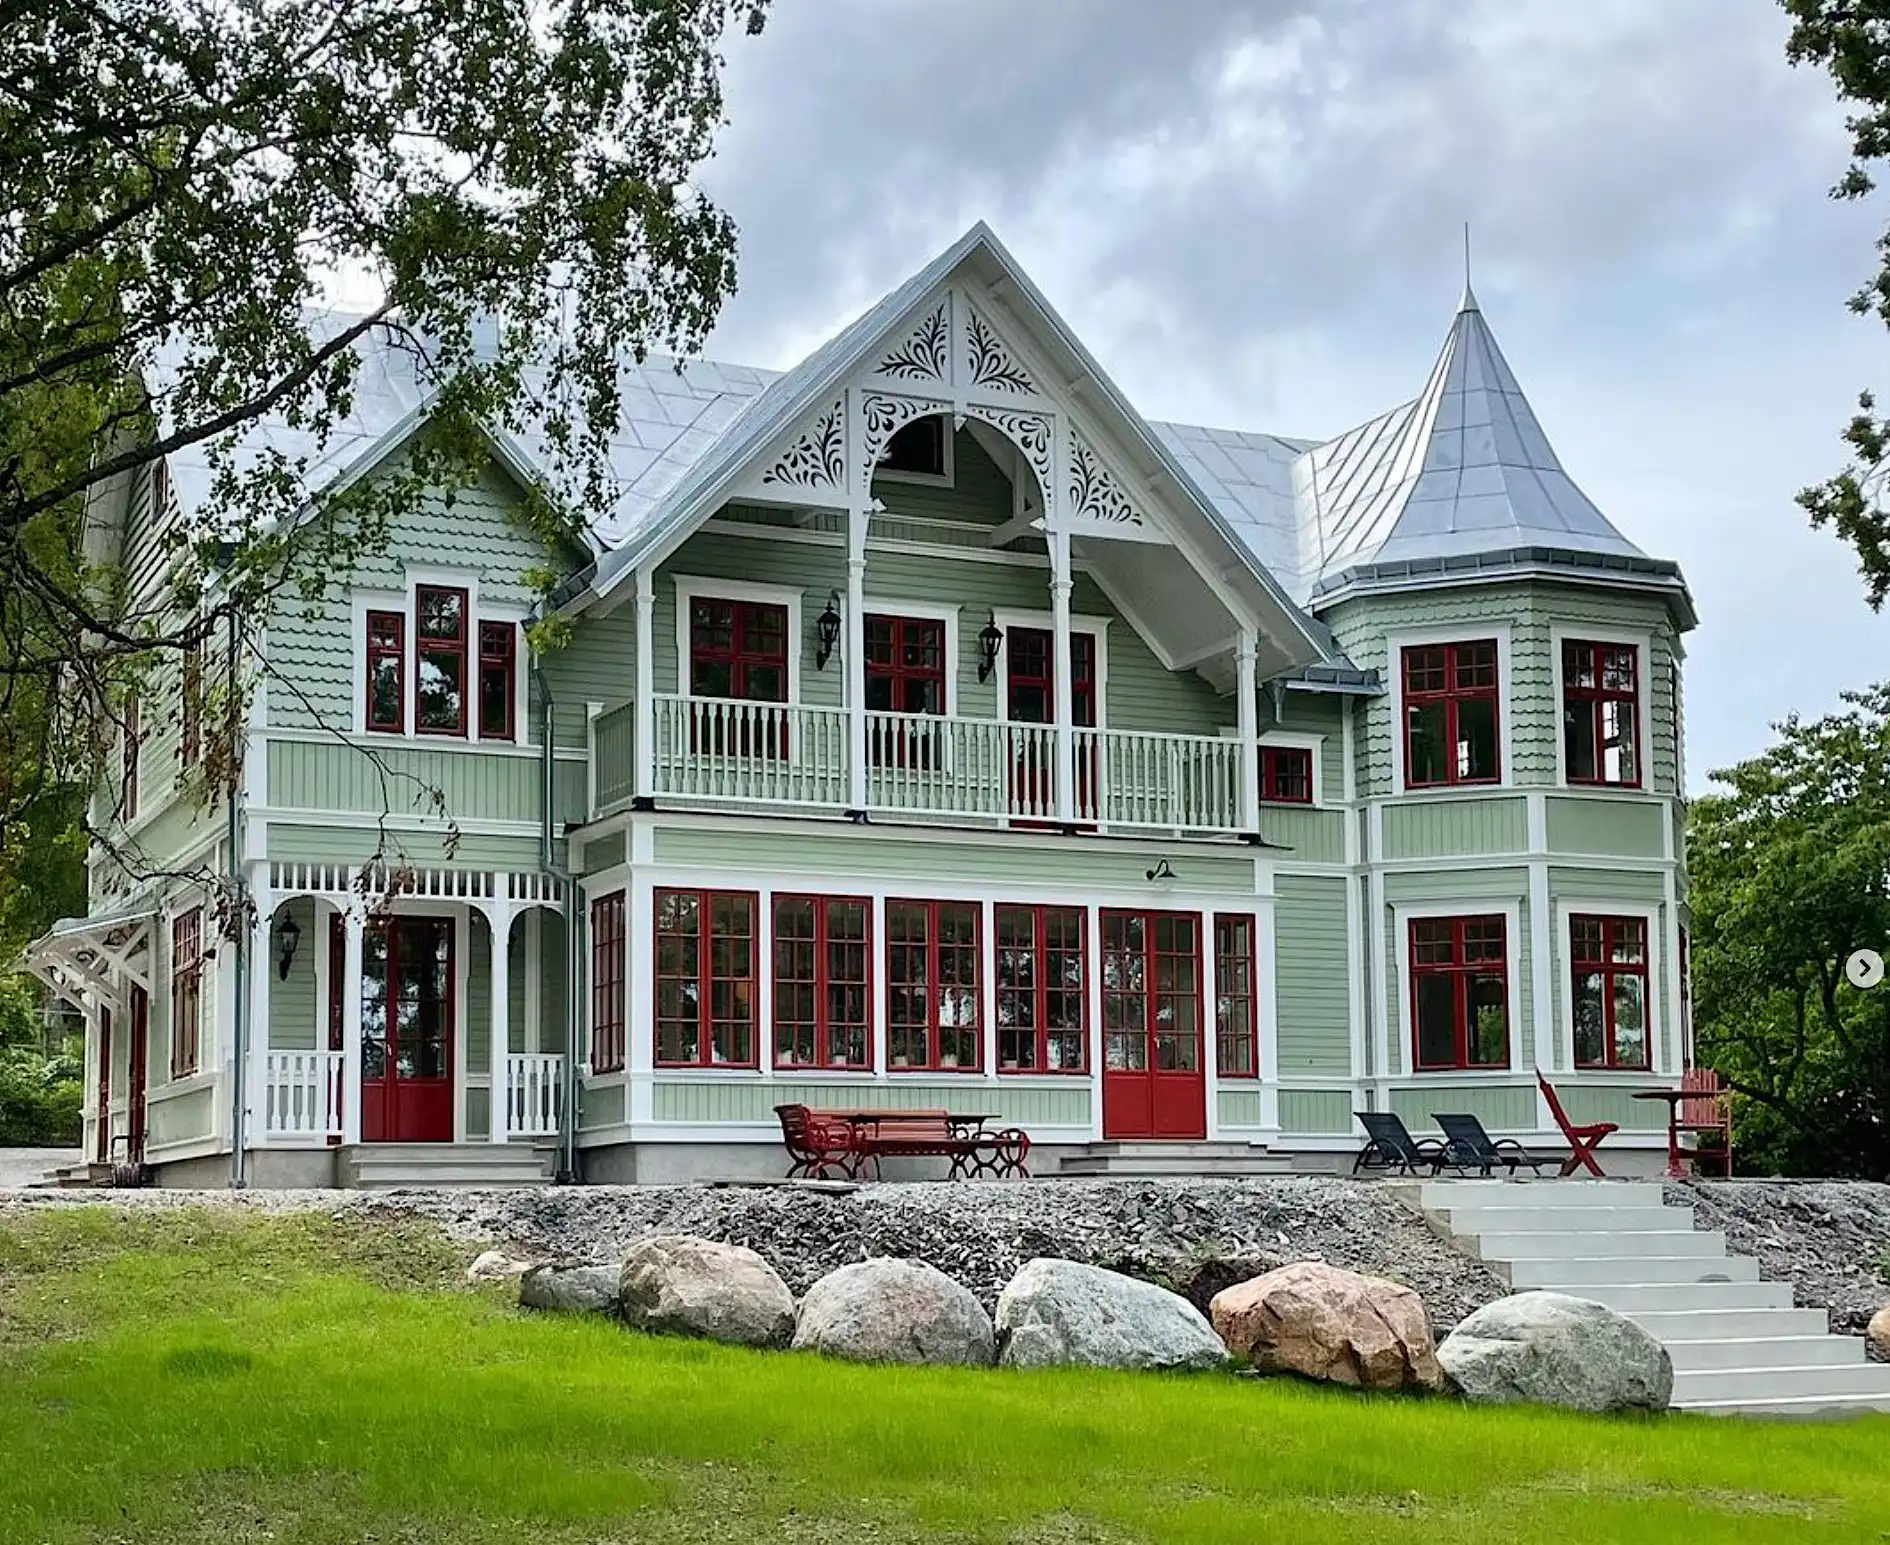 Grünes Haus mit Veranda und viel Schreinerfreude - Holzkonsolen - Rote Fenster, inspiriert vom Jahrhundertwechsel und Jugendstil des 19. Jahrhunderts - Gaveldekor